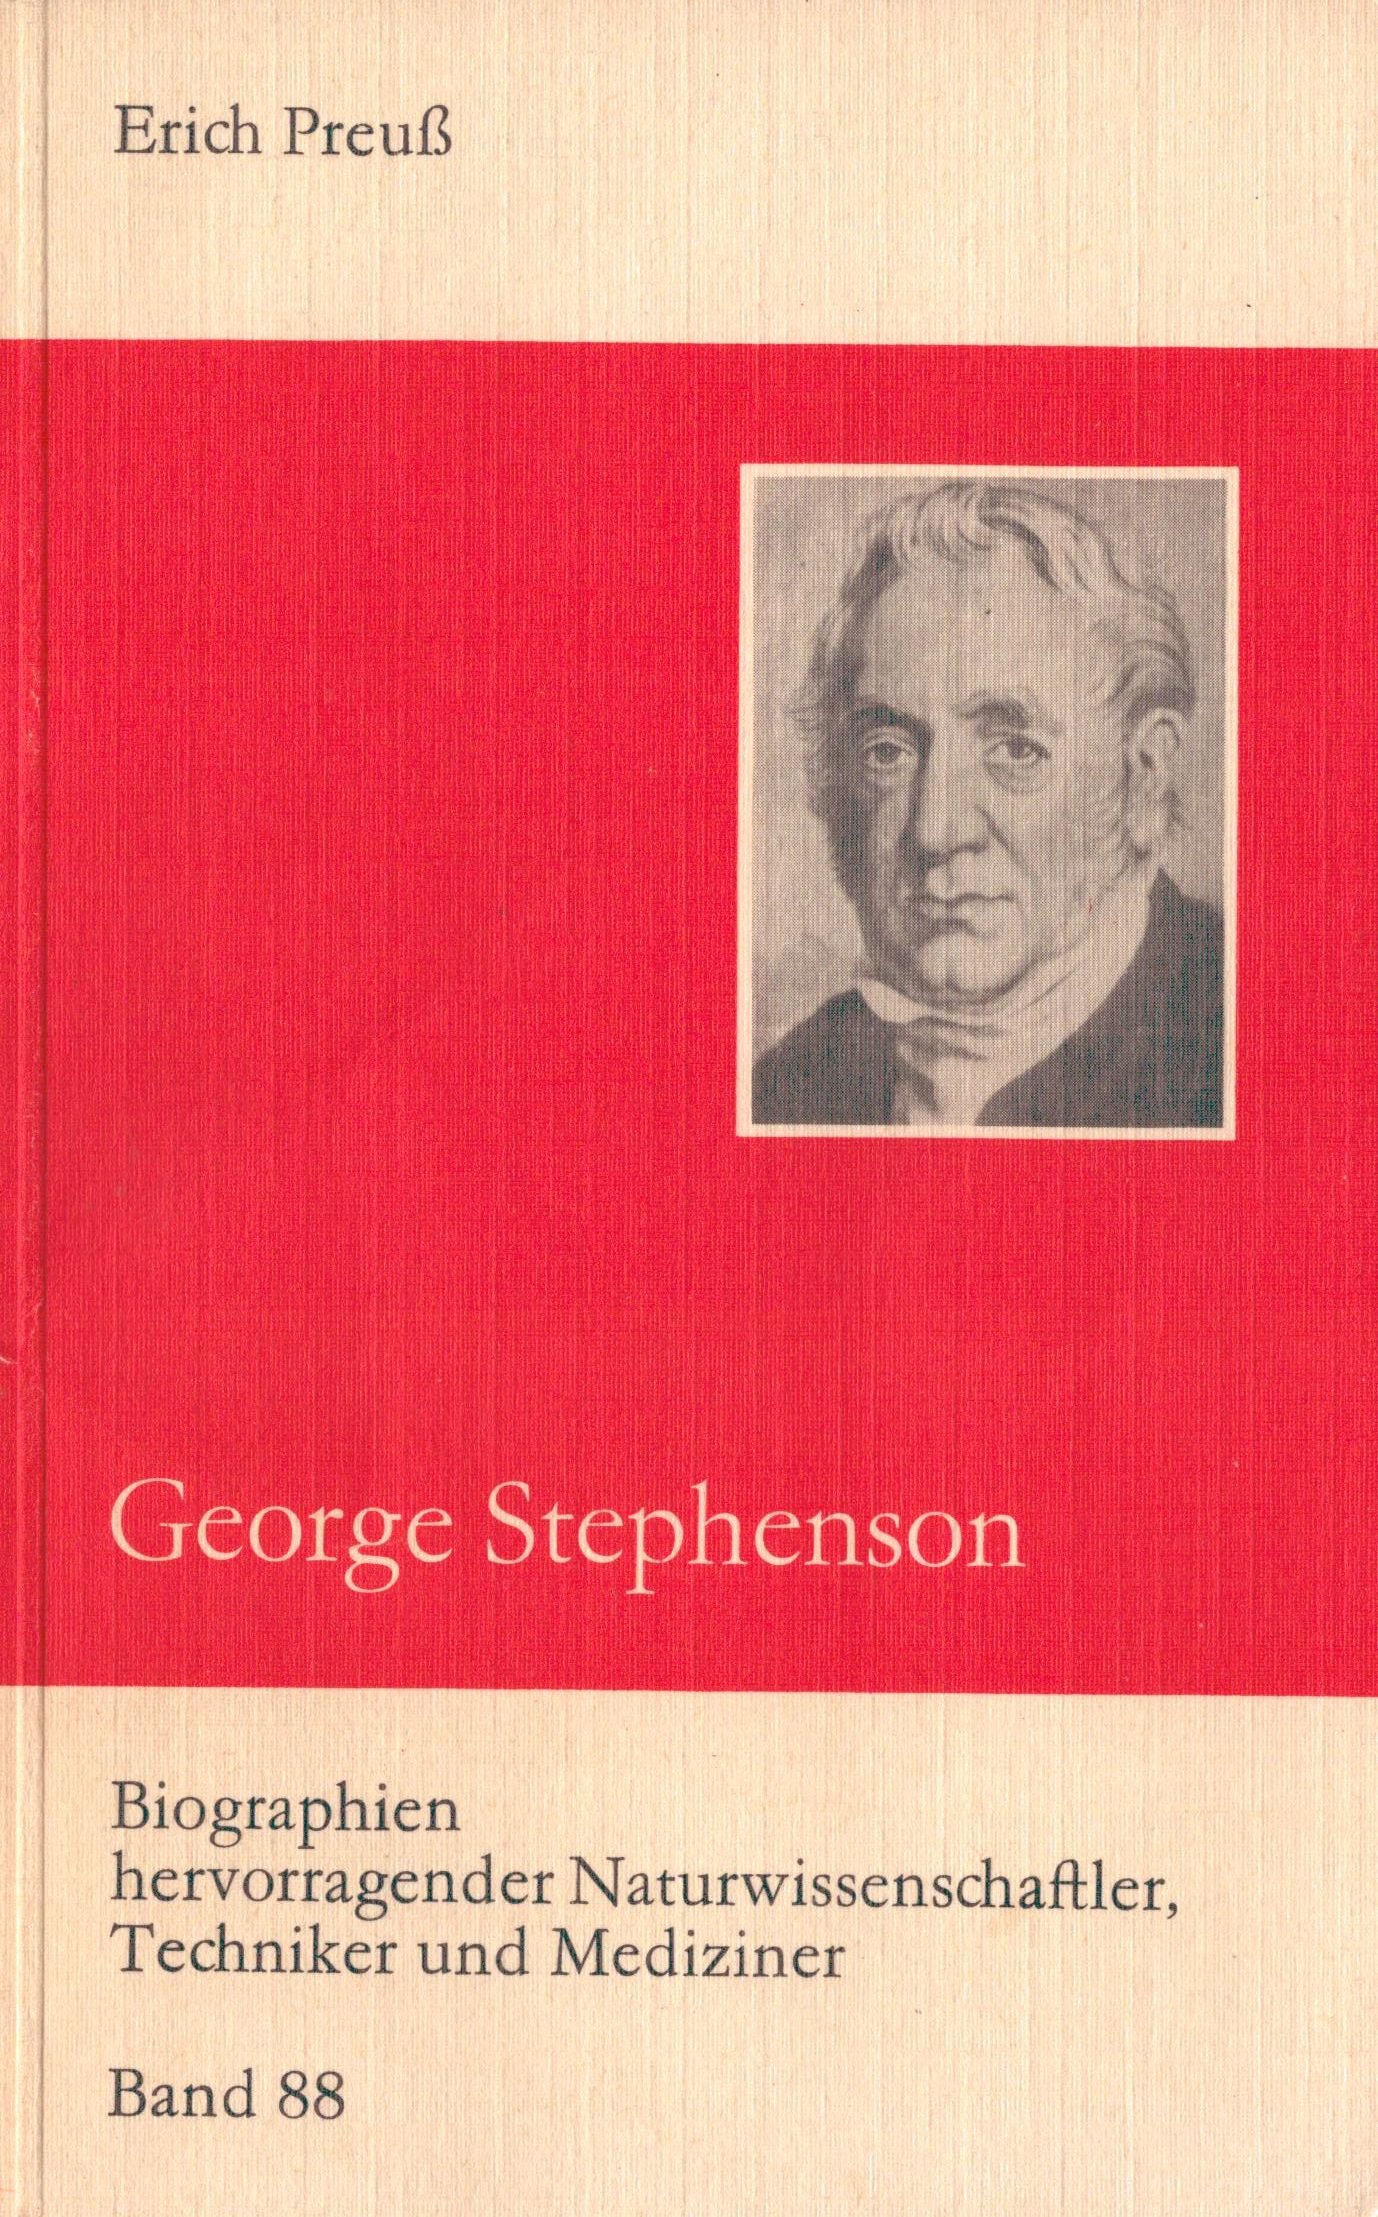 George Stephenson - Biographie (Archiv SAXONIA-FREIBERG-STIFTUNG CC BY-NC-SA)